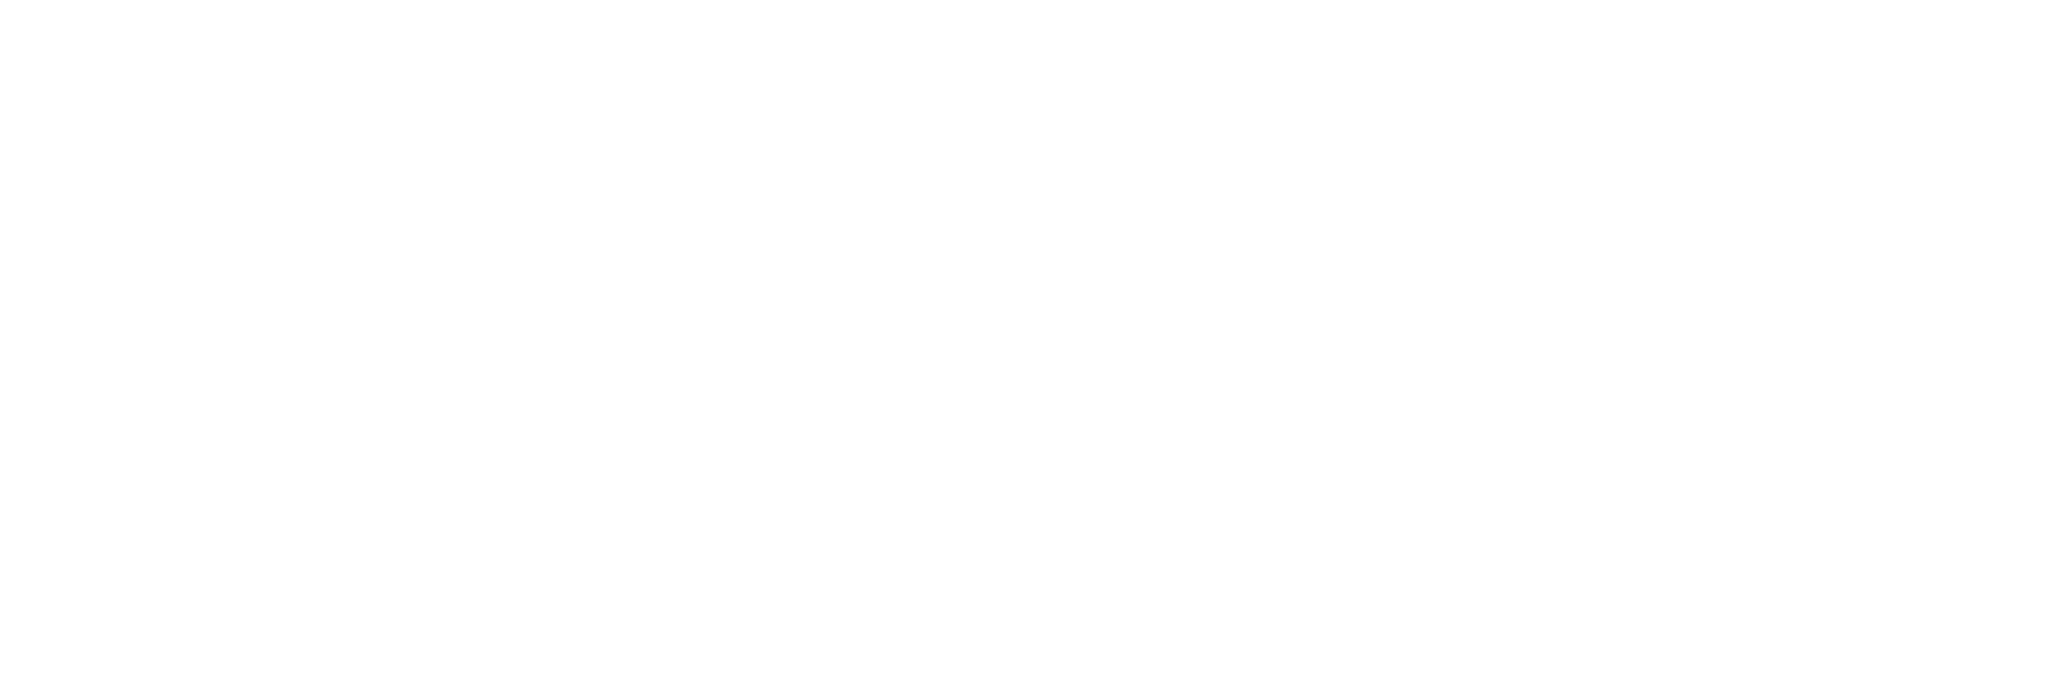 Qphoto Competition